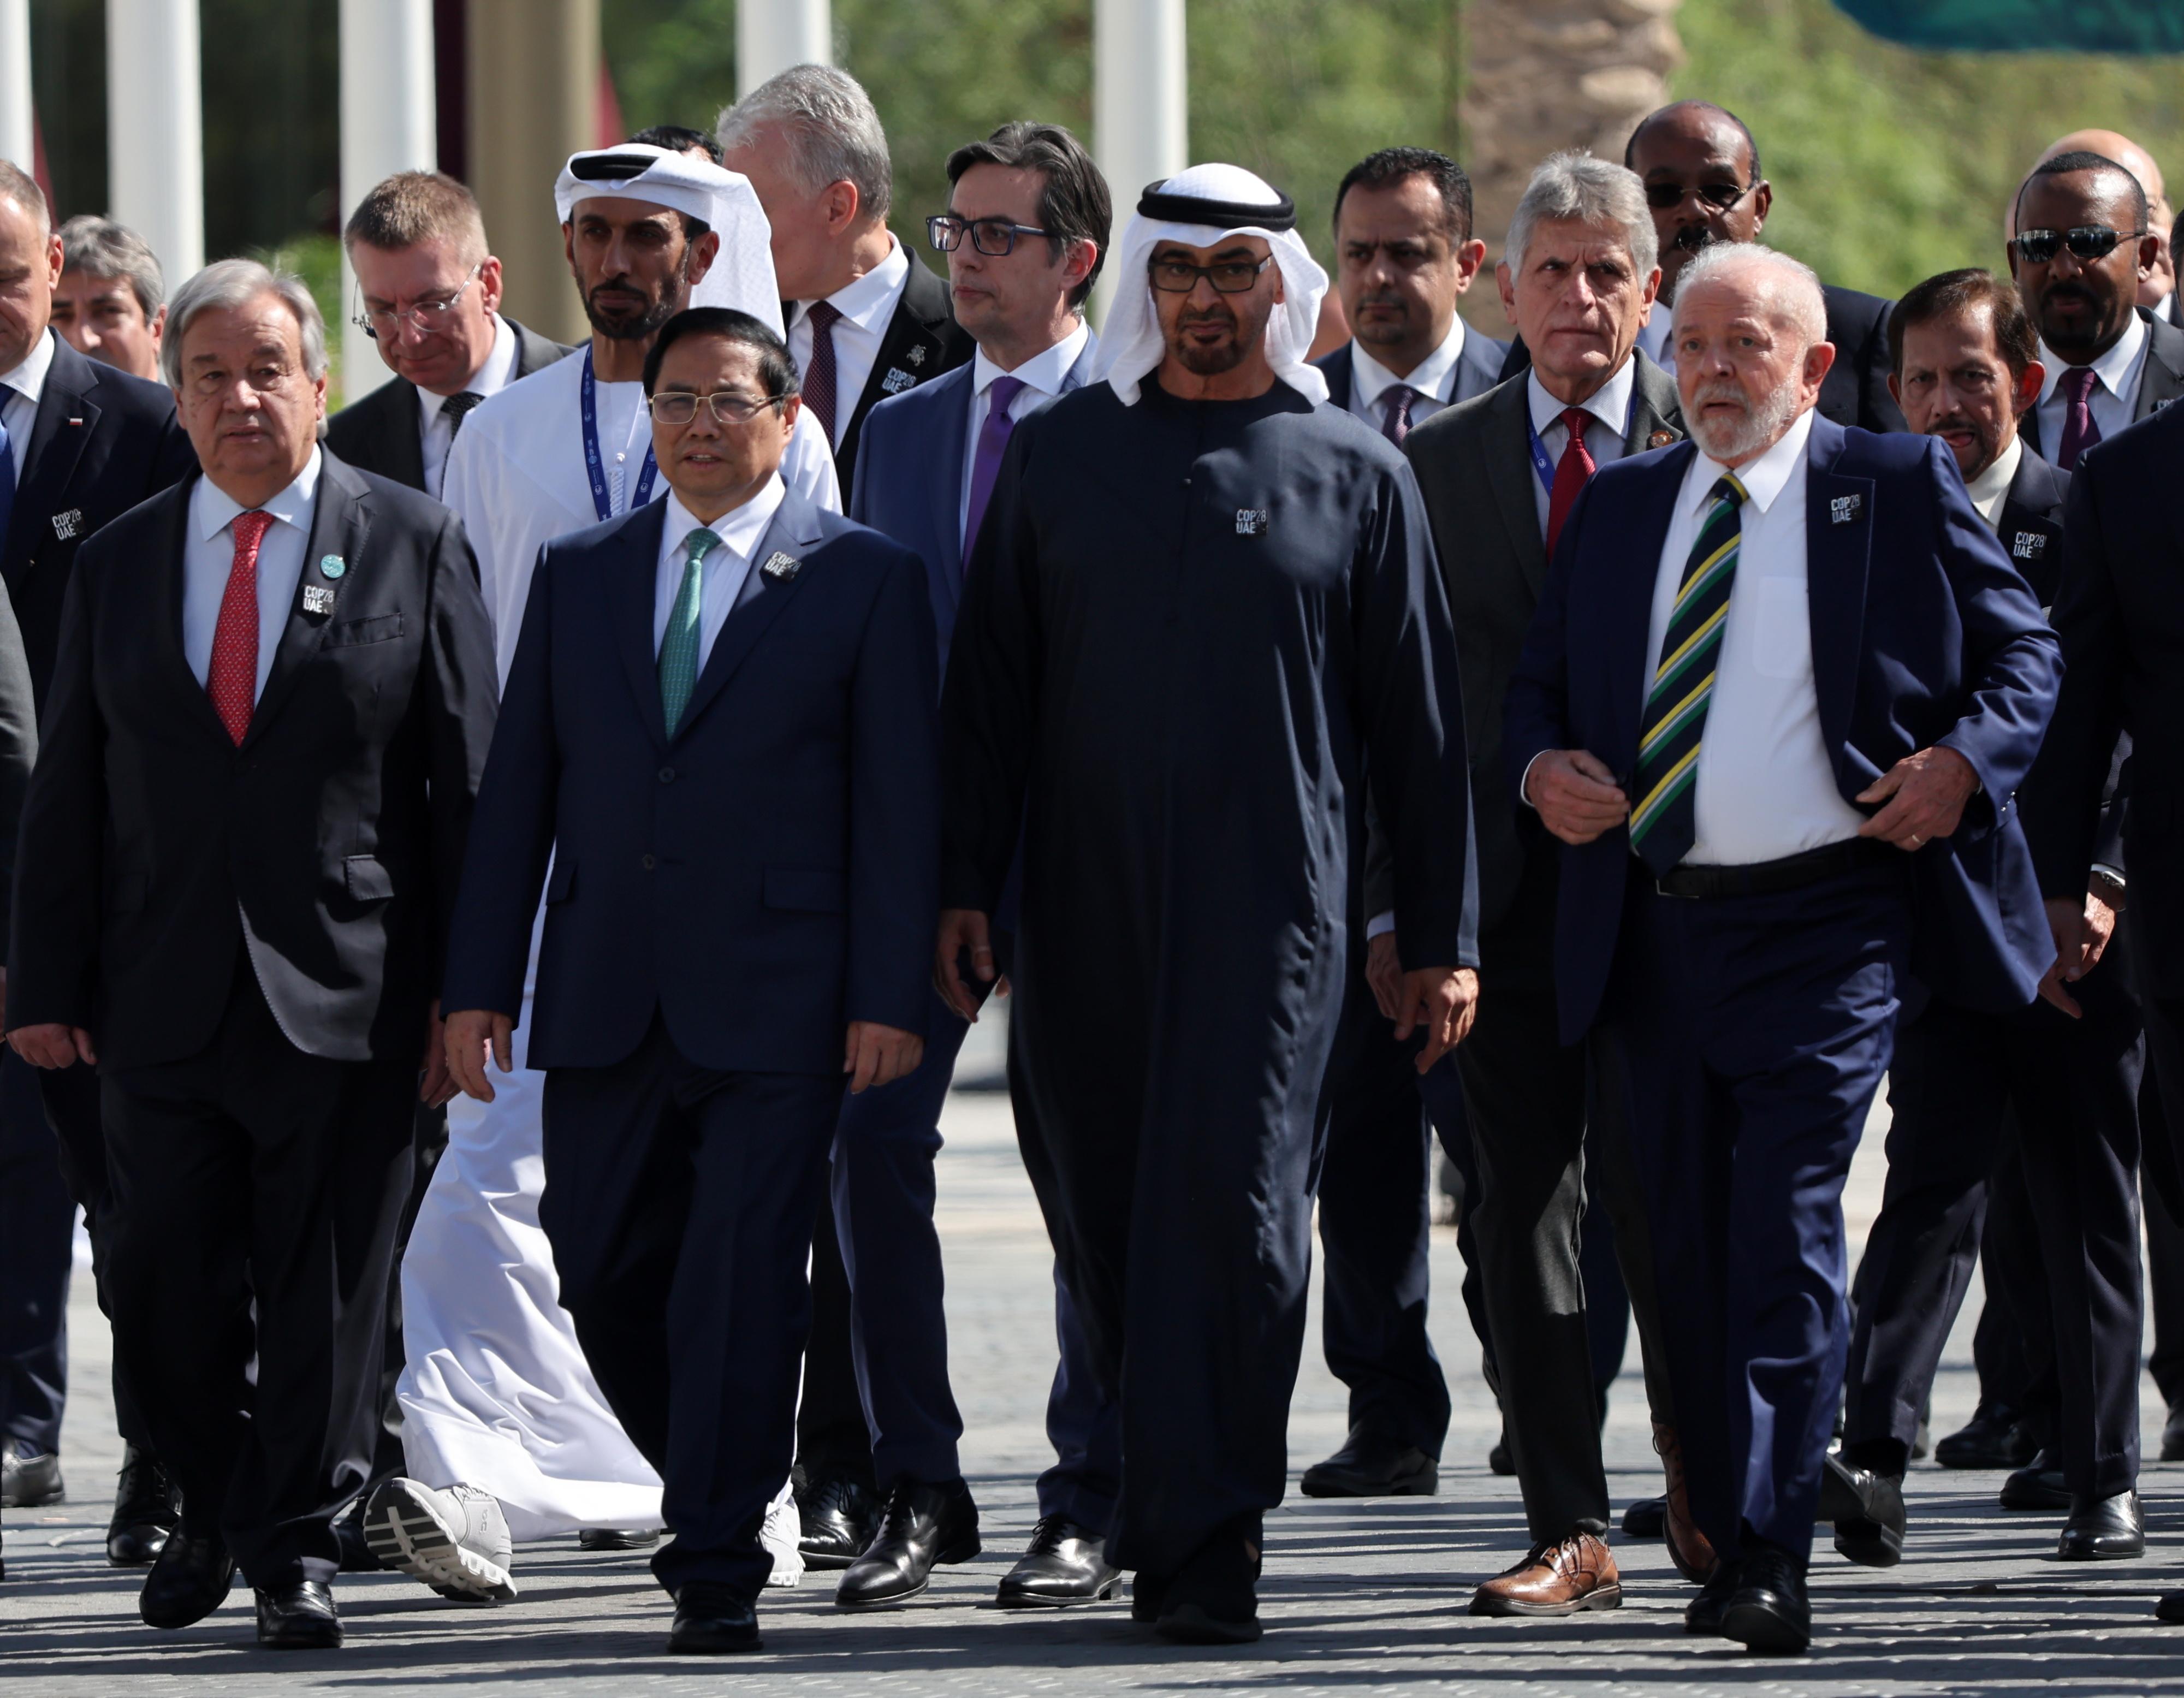 Nova controvérsia a envolver a presidência da COP 28 no Dubai